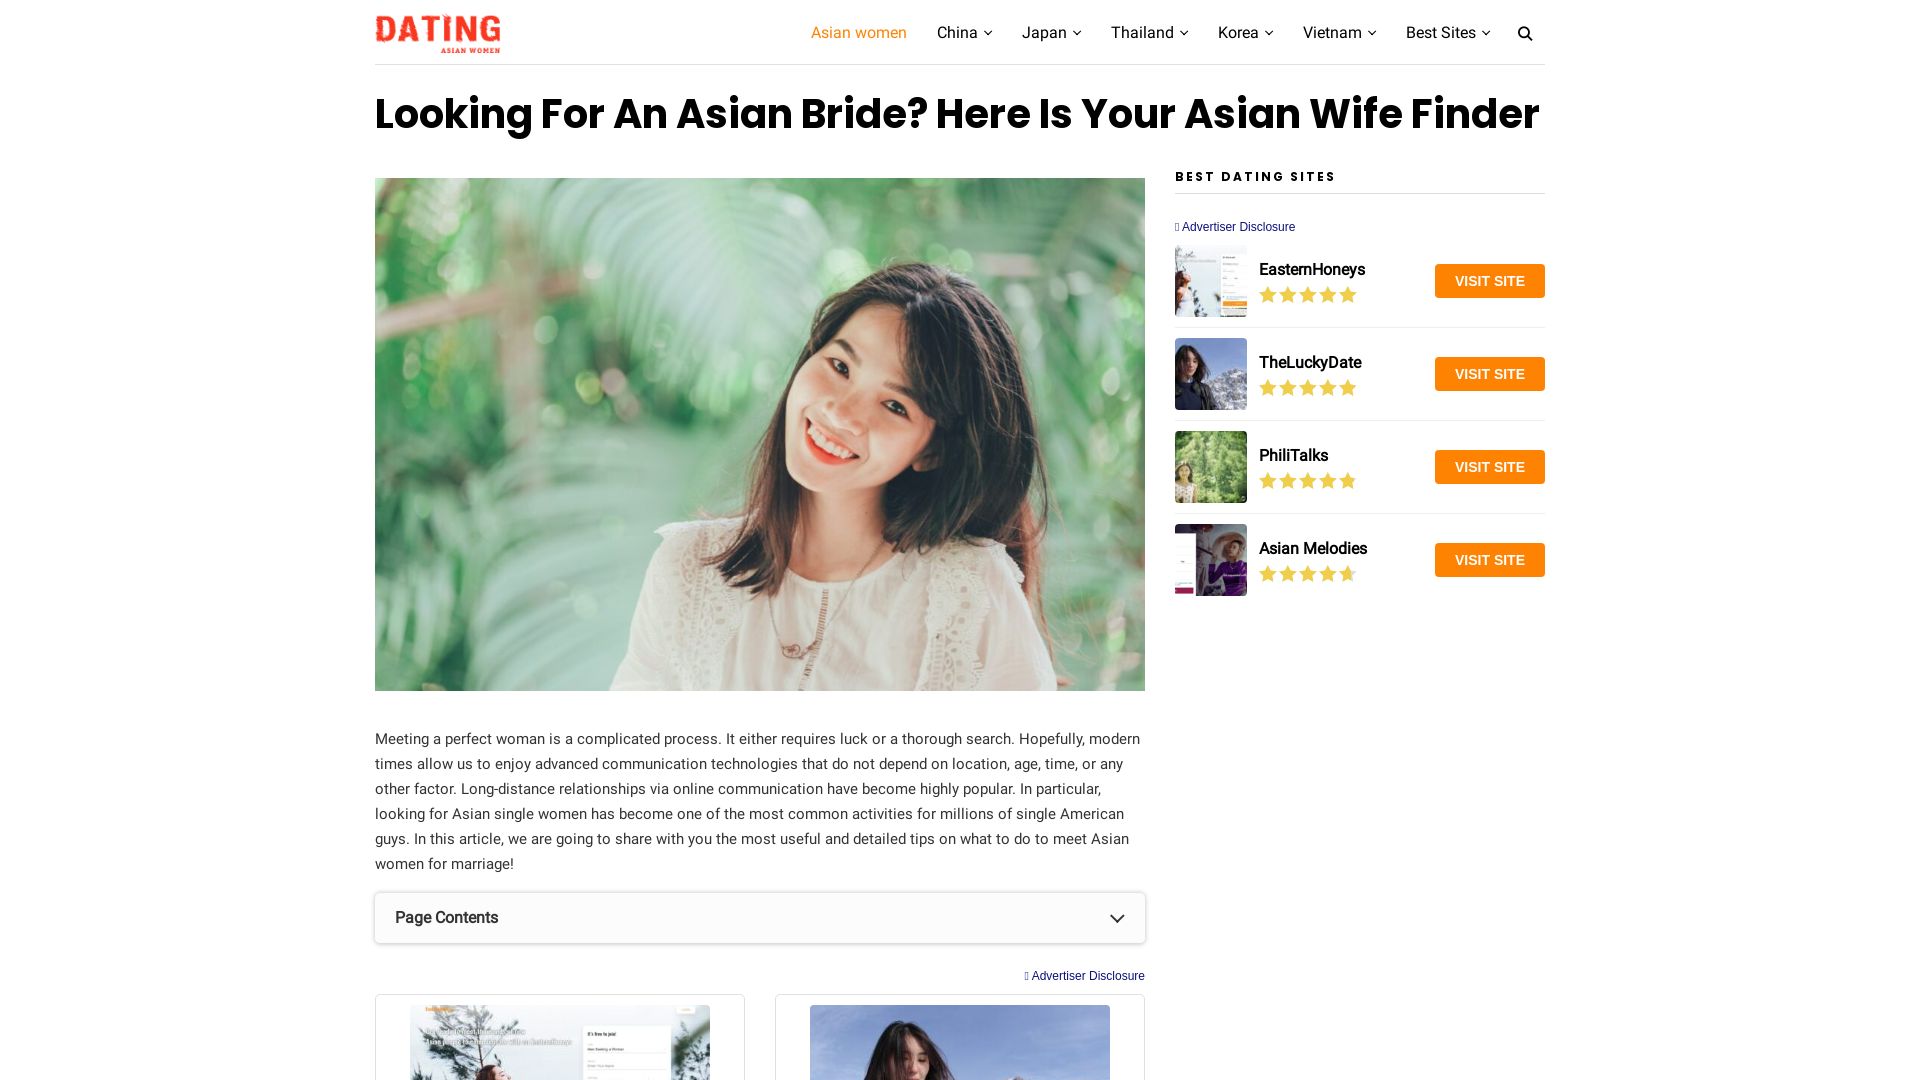 État du site web dating-asian-women.org est   EN LIGNE